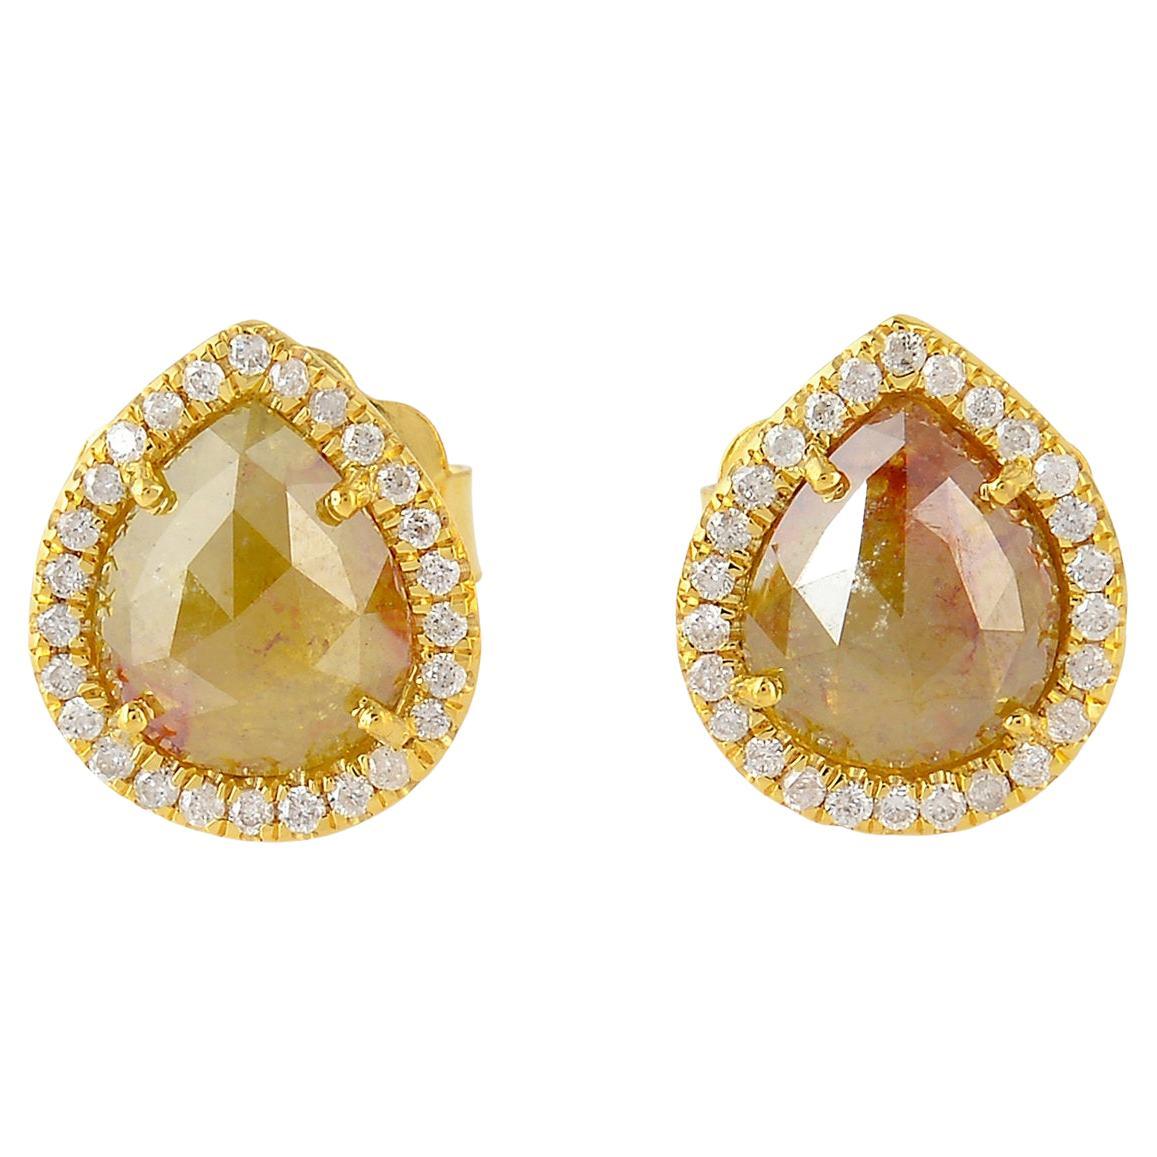 Clous d'oreilles en or jaune 18 carats avec diamants en forme de glace et pavé de diamants